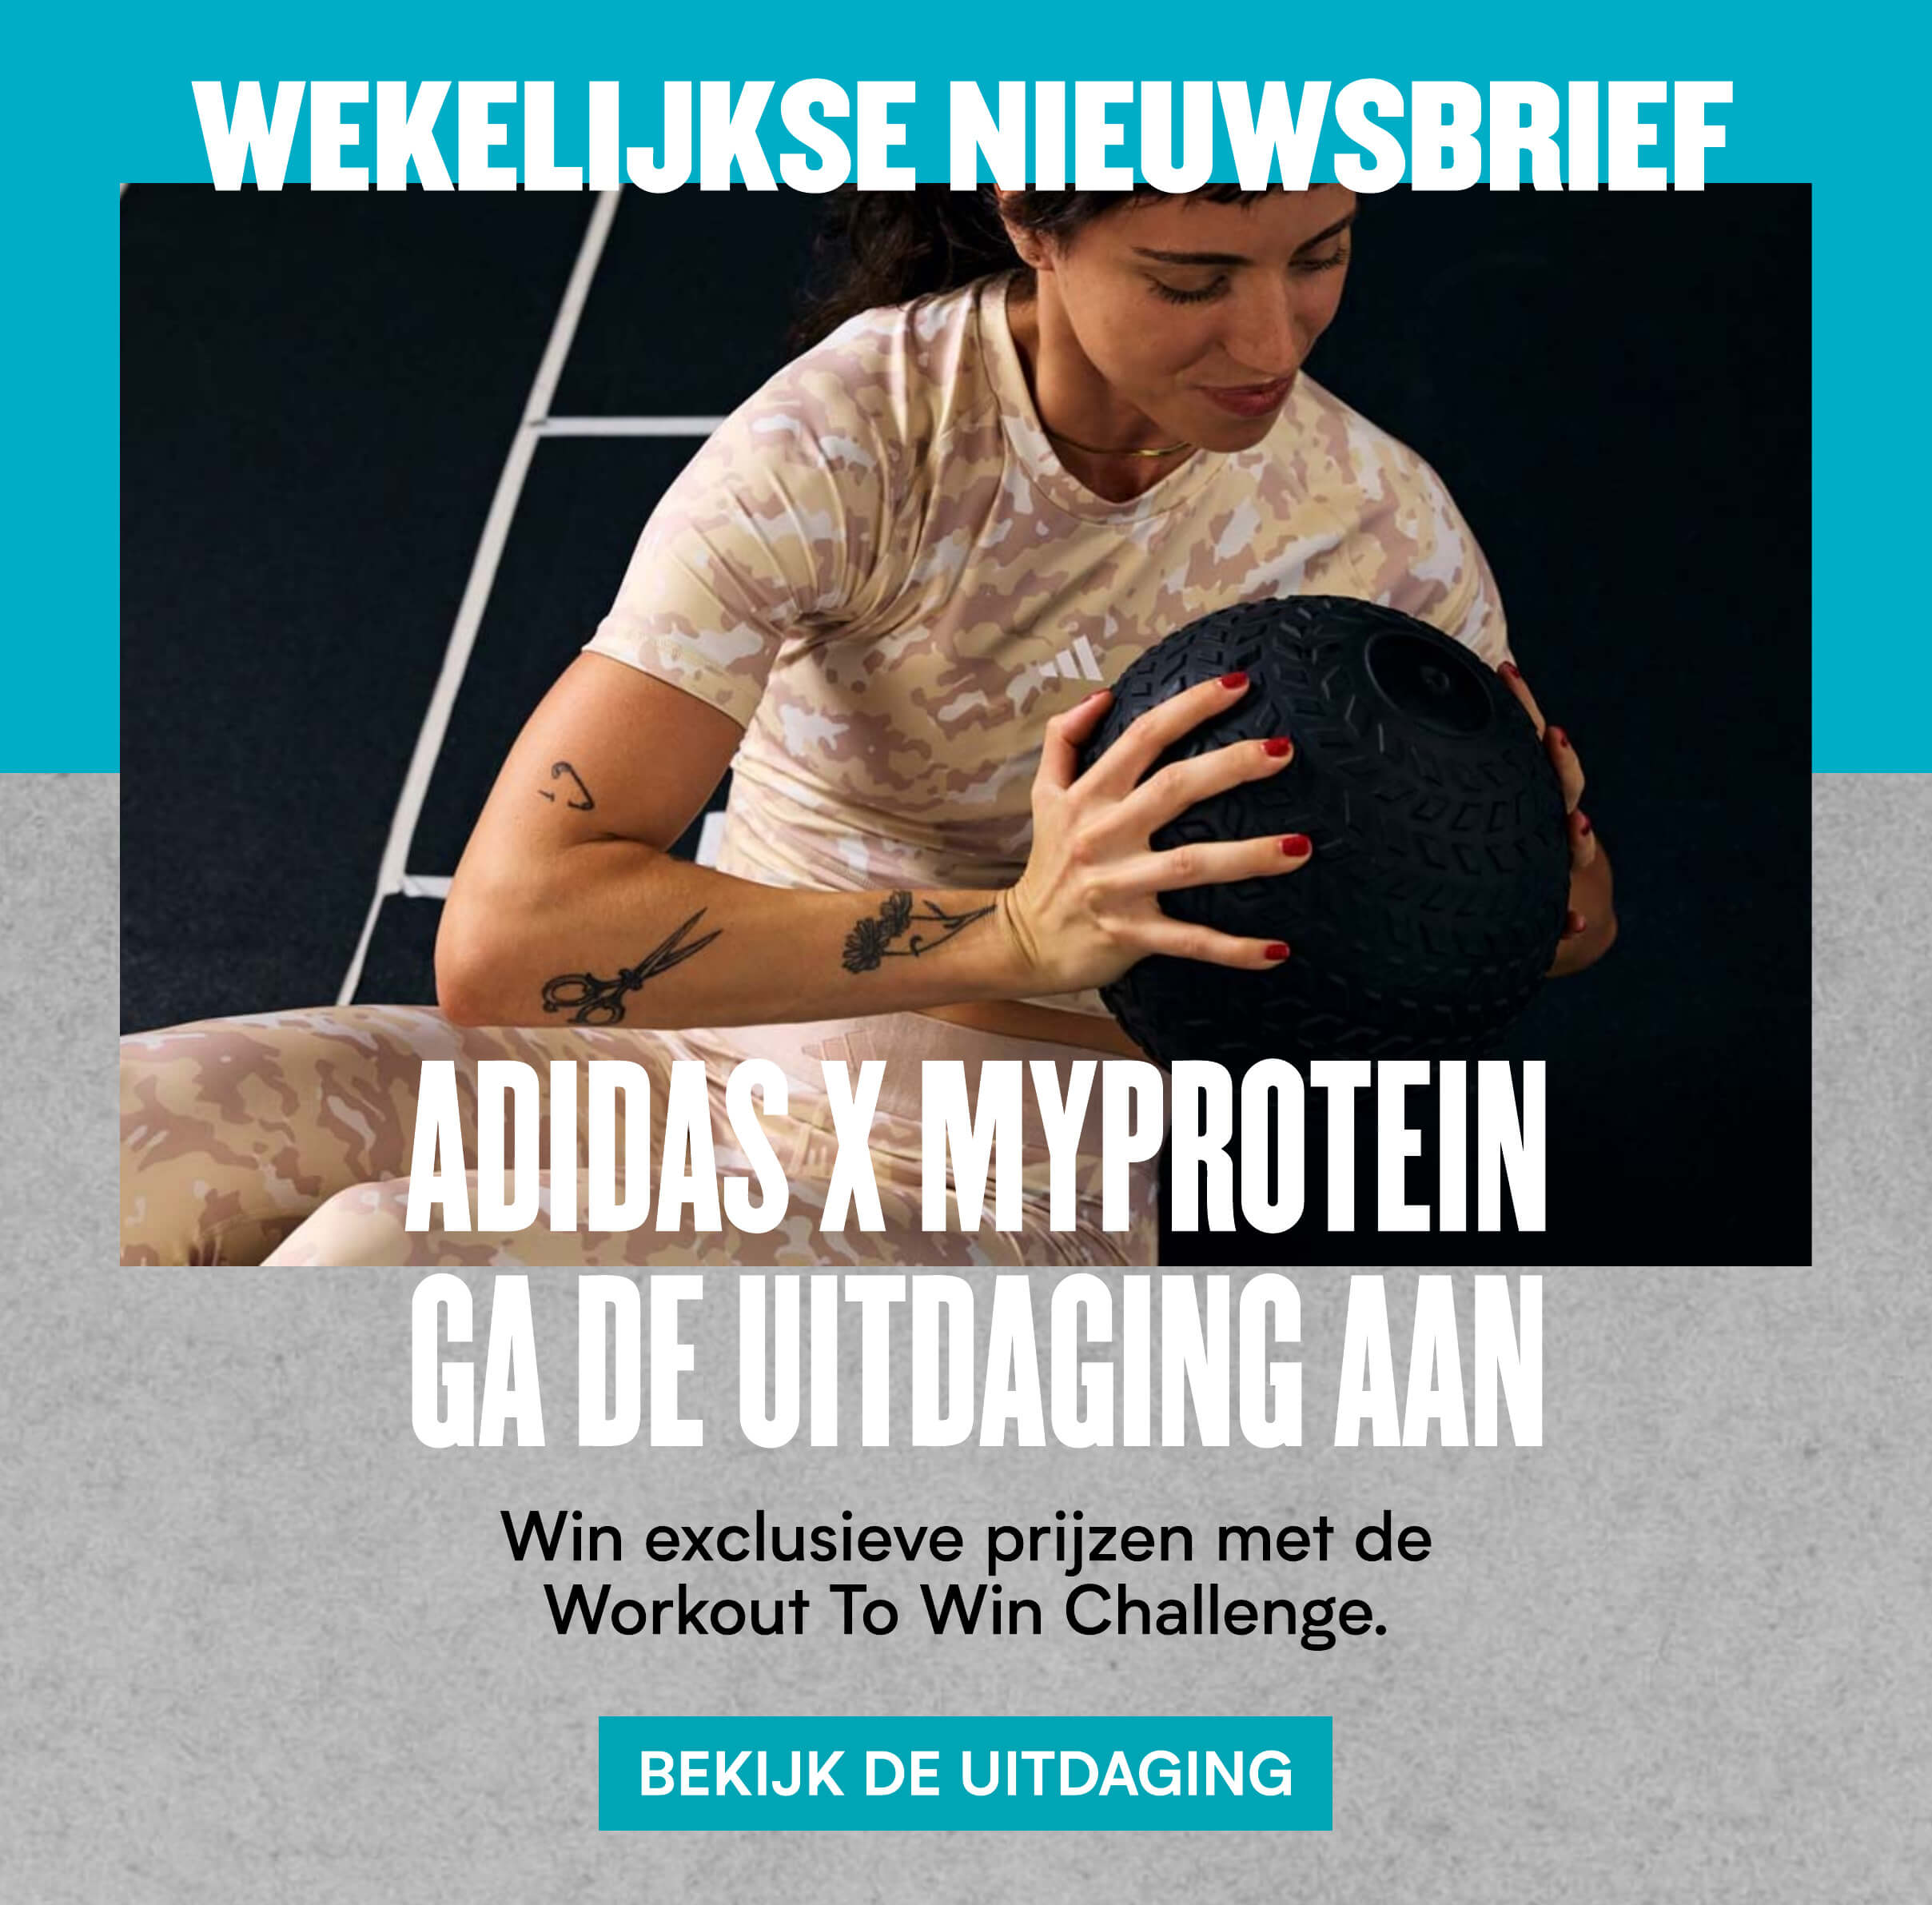 engel Opschudding gat Pak prijzen met de adidas x myprotein challenge - Myprotein Nederland